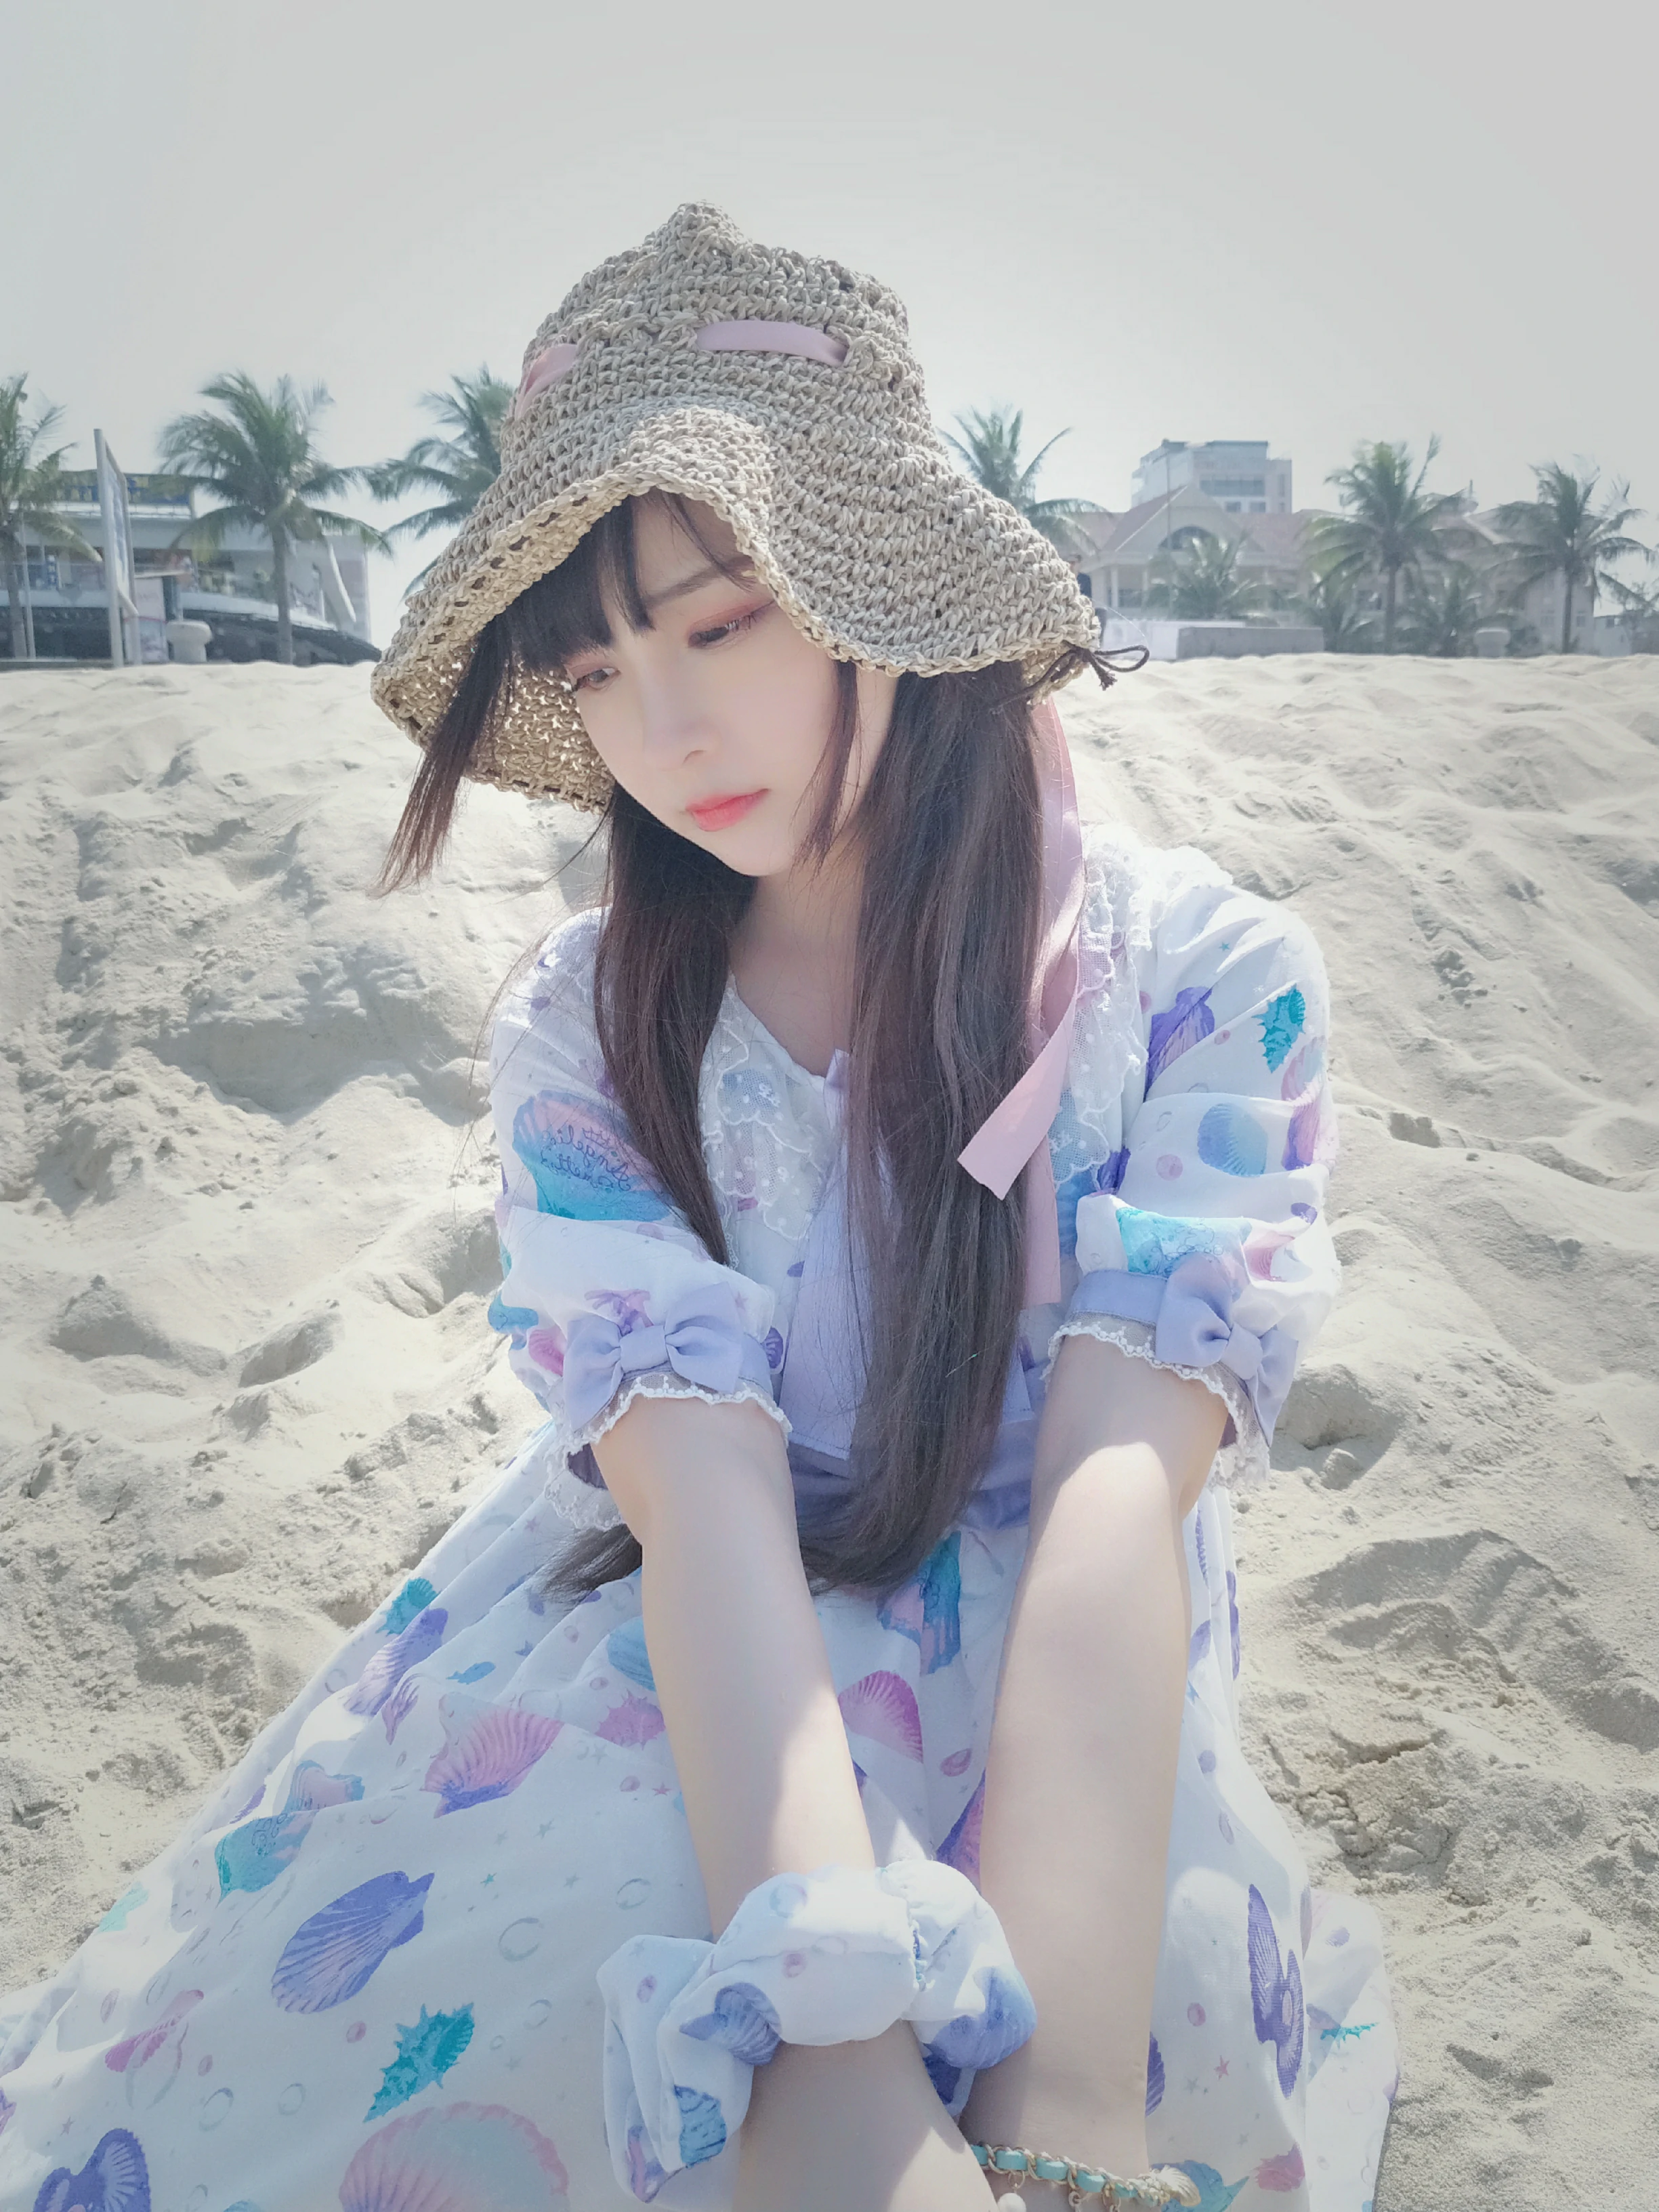 清纯少女 古川kagura 蓝色连身裙之沙滩写真,_20190207_175900